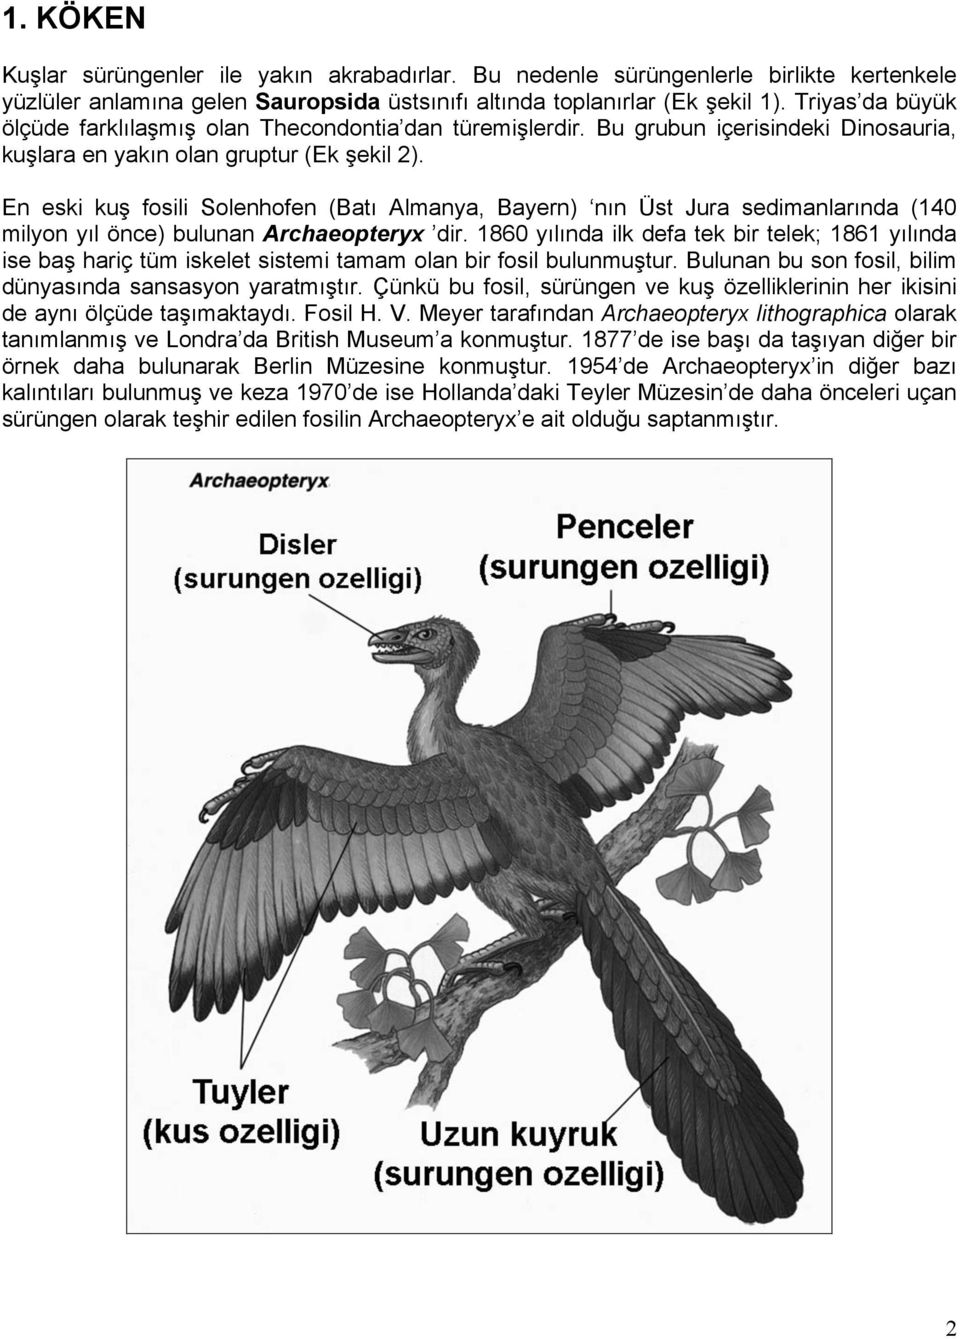 En eski kuş fosili Solenhofen (Batı Almanya, Bayern) nın Üst Jura sedimanlarında (140 milyon yıl önce) bulunan Archaeopteryx dir.